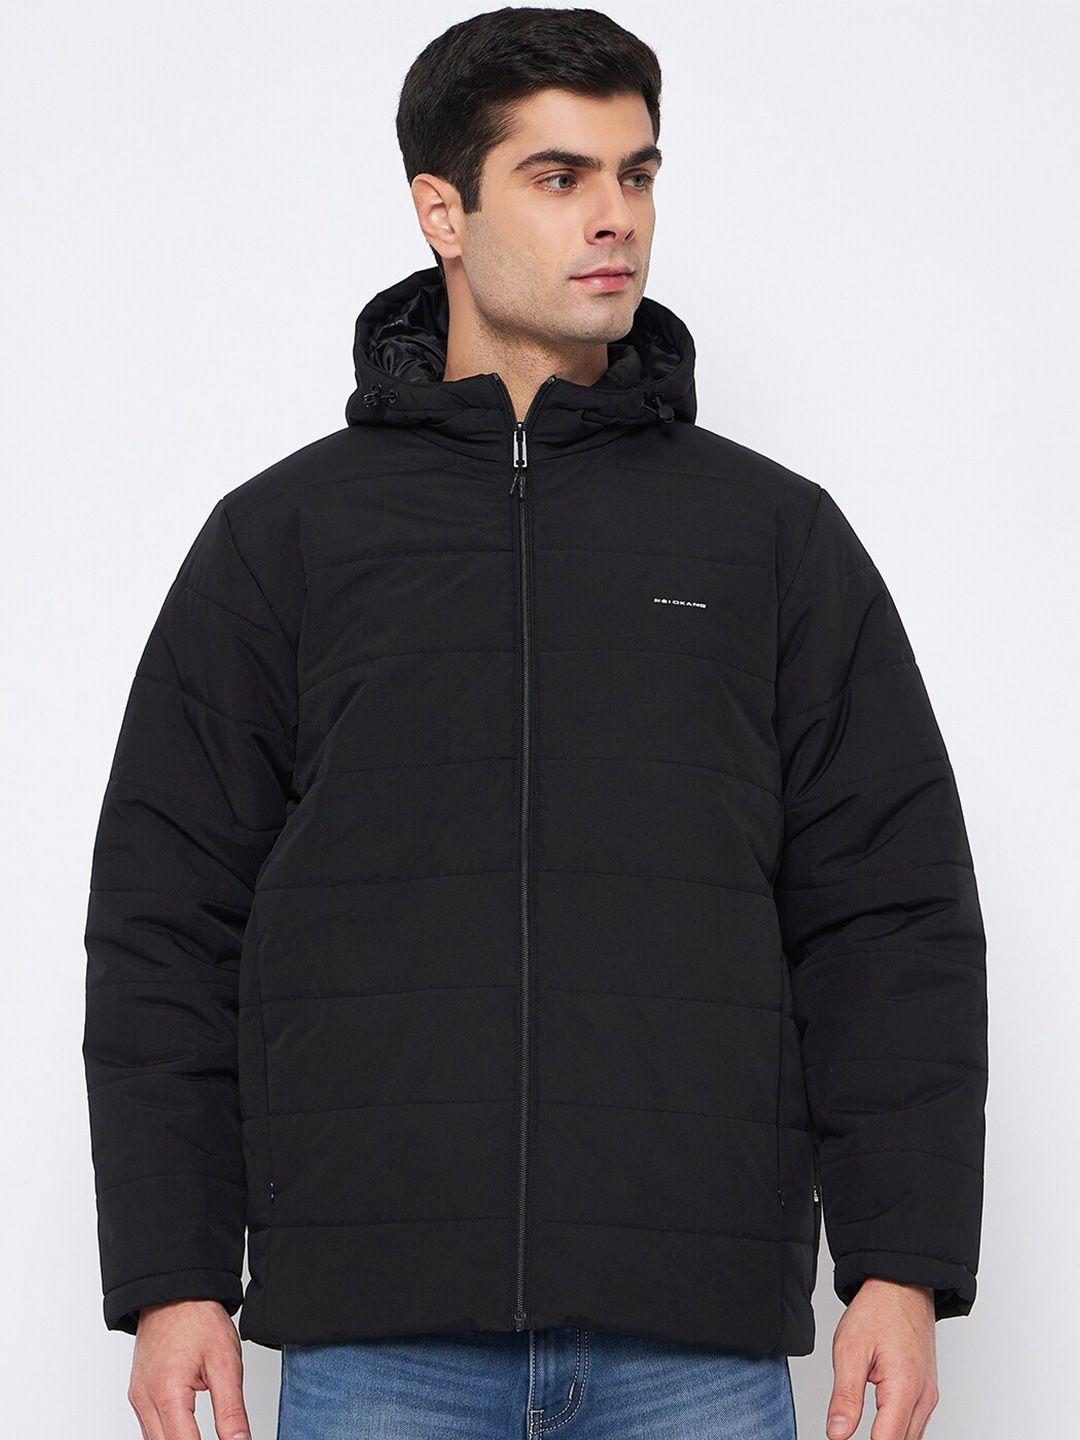 okane-hooded-neck-long-sleeves-zip-detail-lightweight-padded-jacket